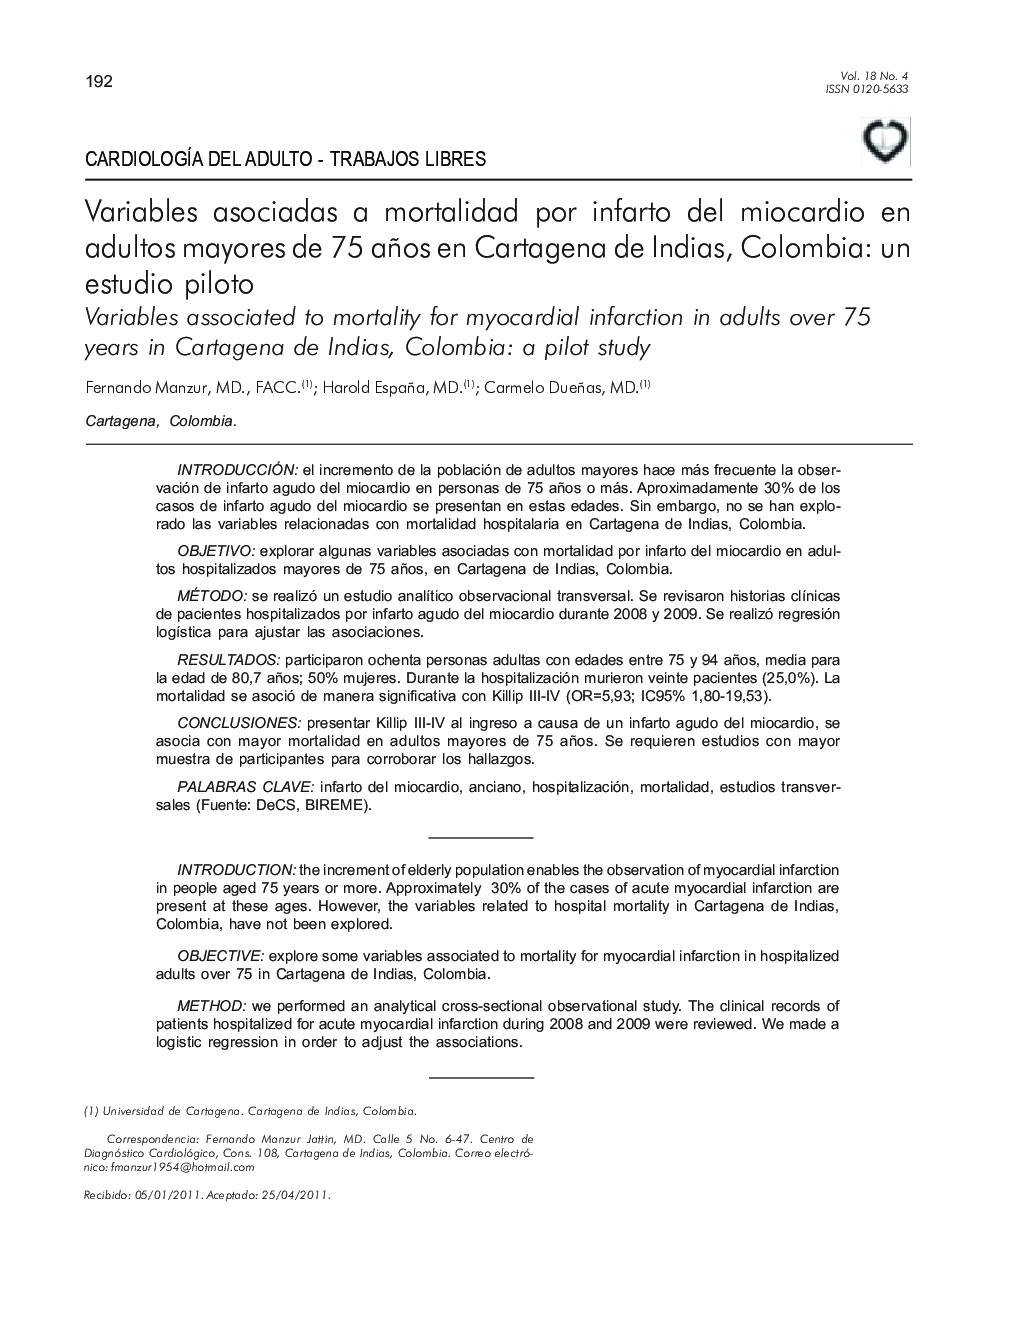 Variables asociadas a mortalidad por infarto del miocardio en adultos mayores de 75 años en Cartagena de Indias, Colombia: un estudio piloto